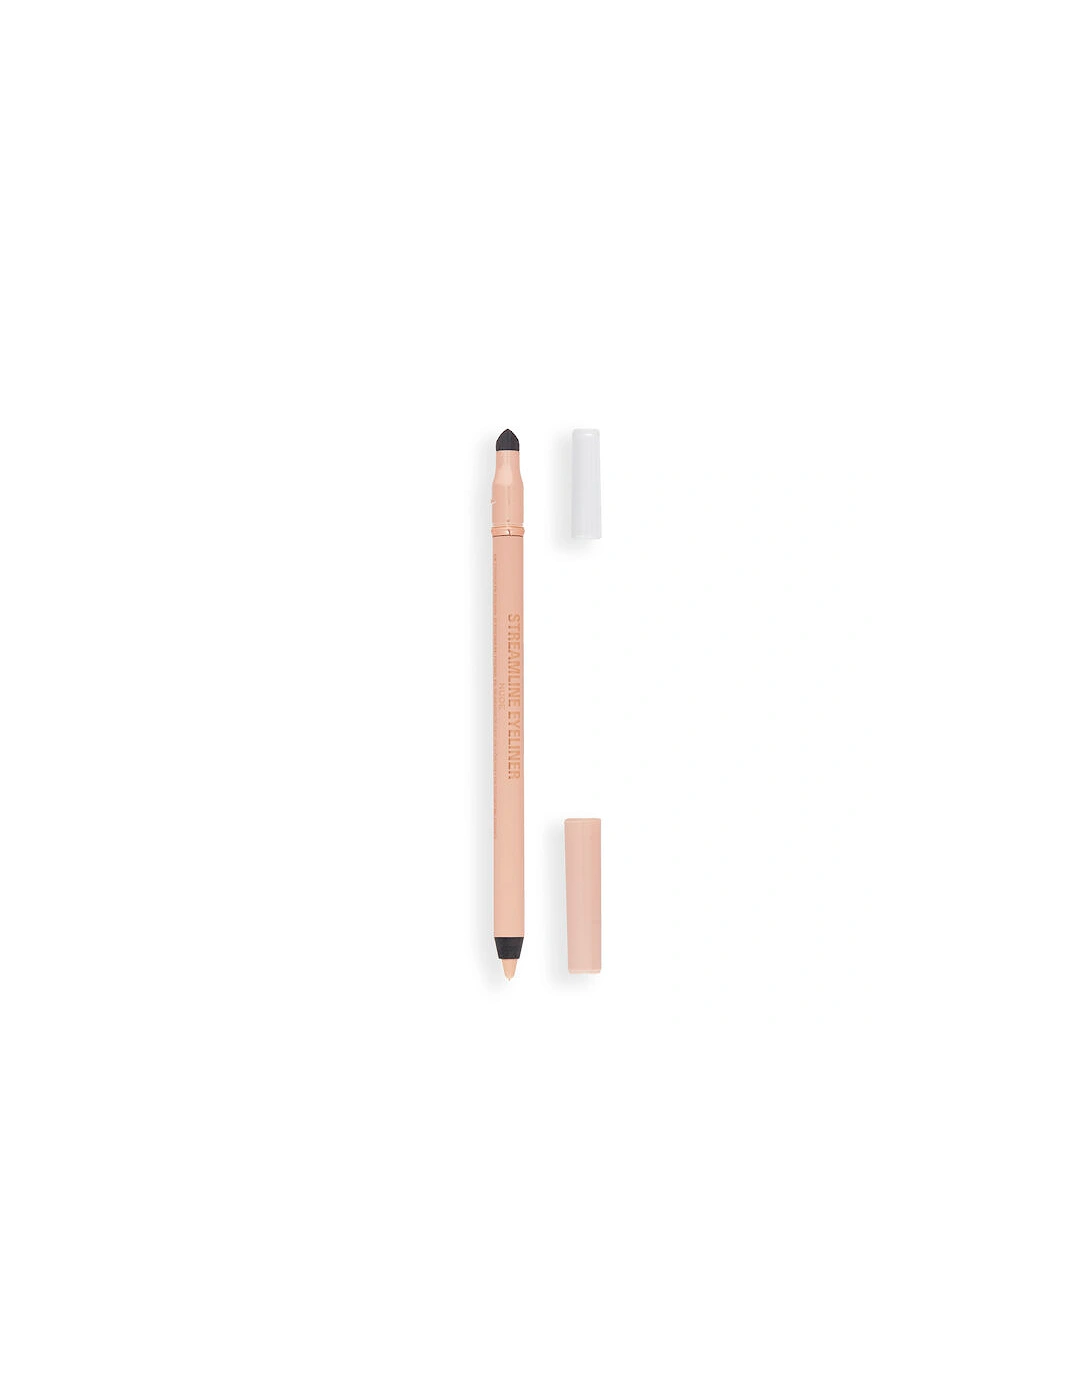 Makeup Streamline Waterline Eyeliner Pencil Nude, 2 of 1